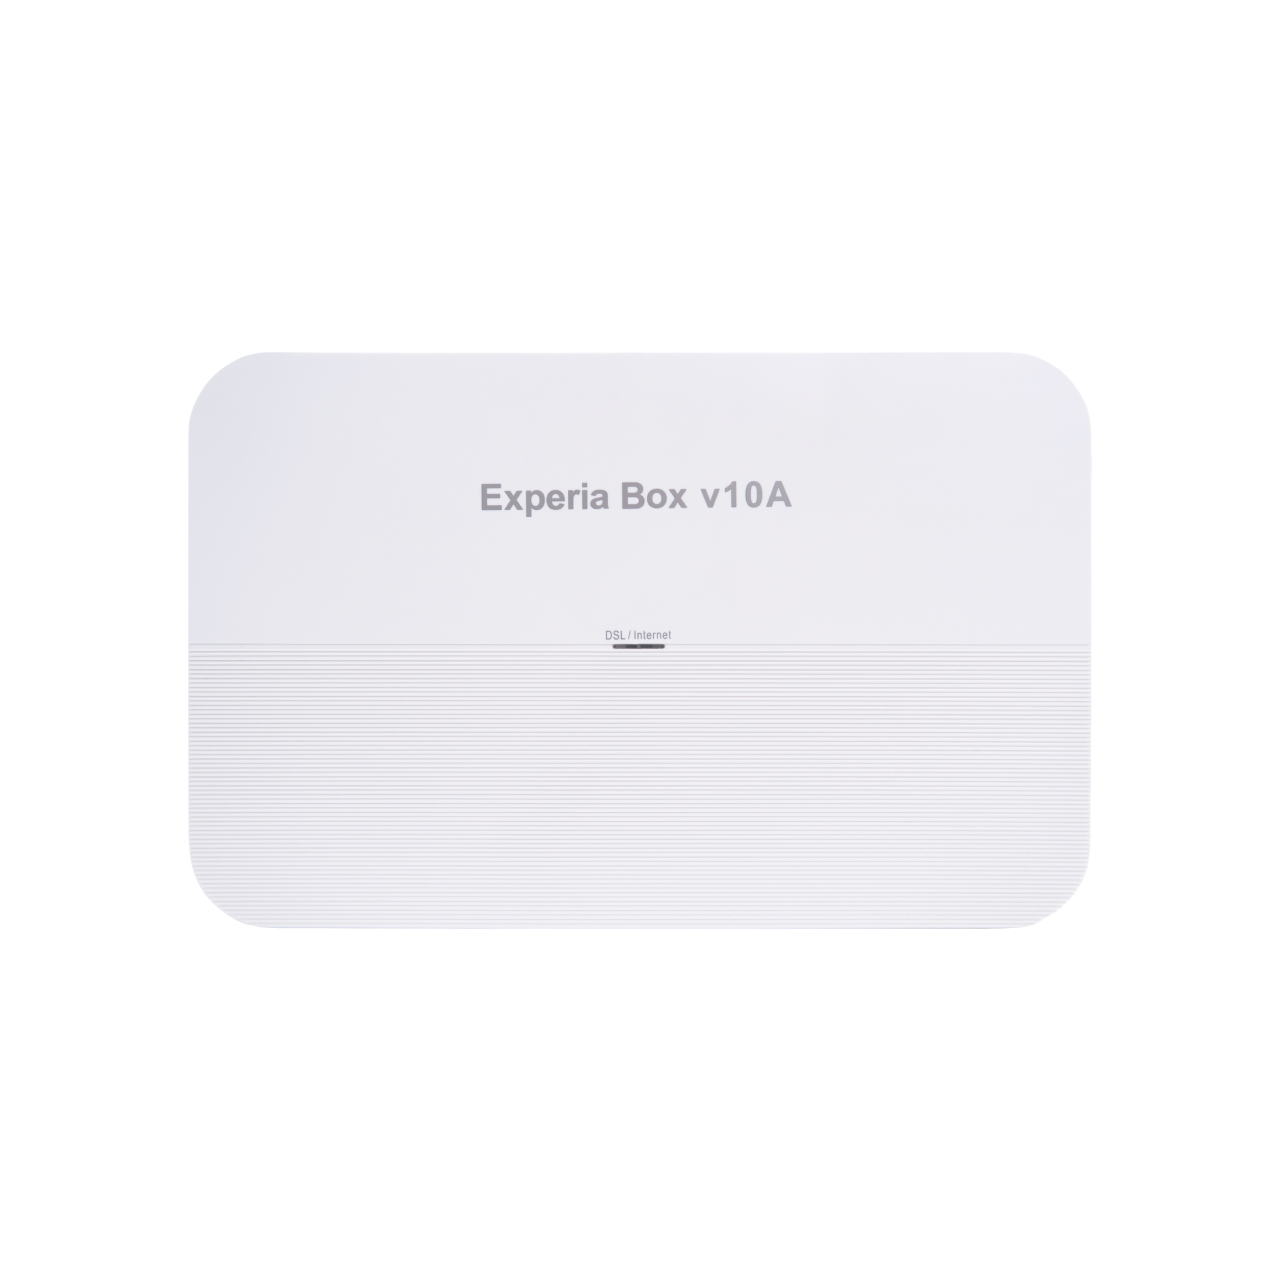 Experia Box v10a